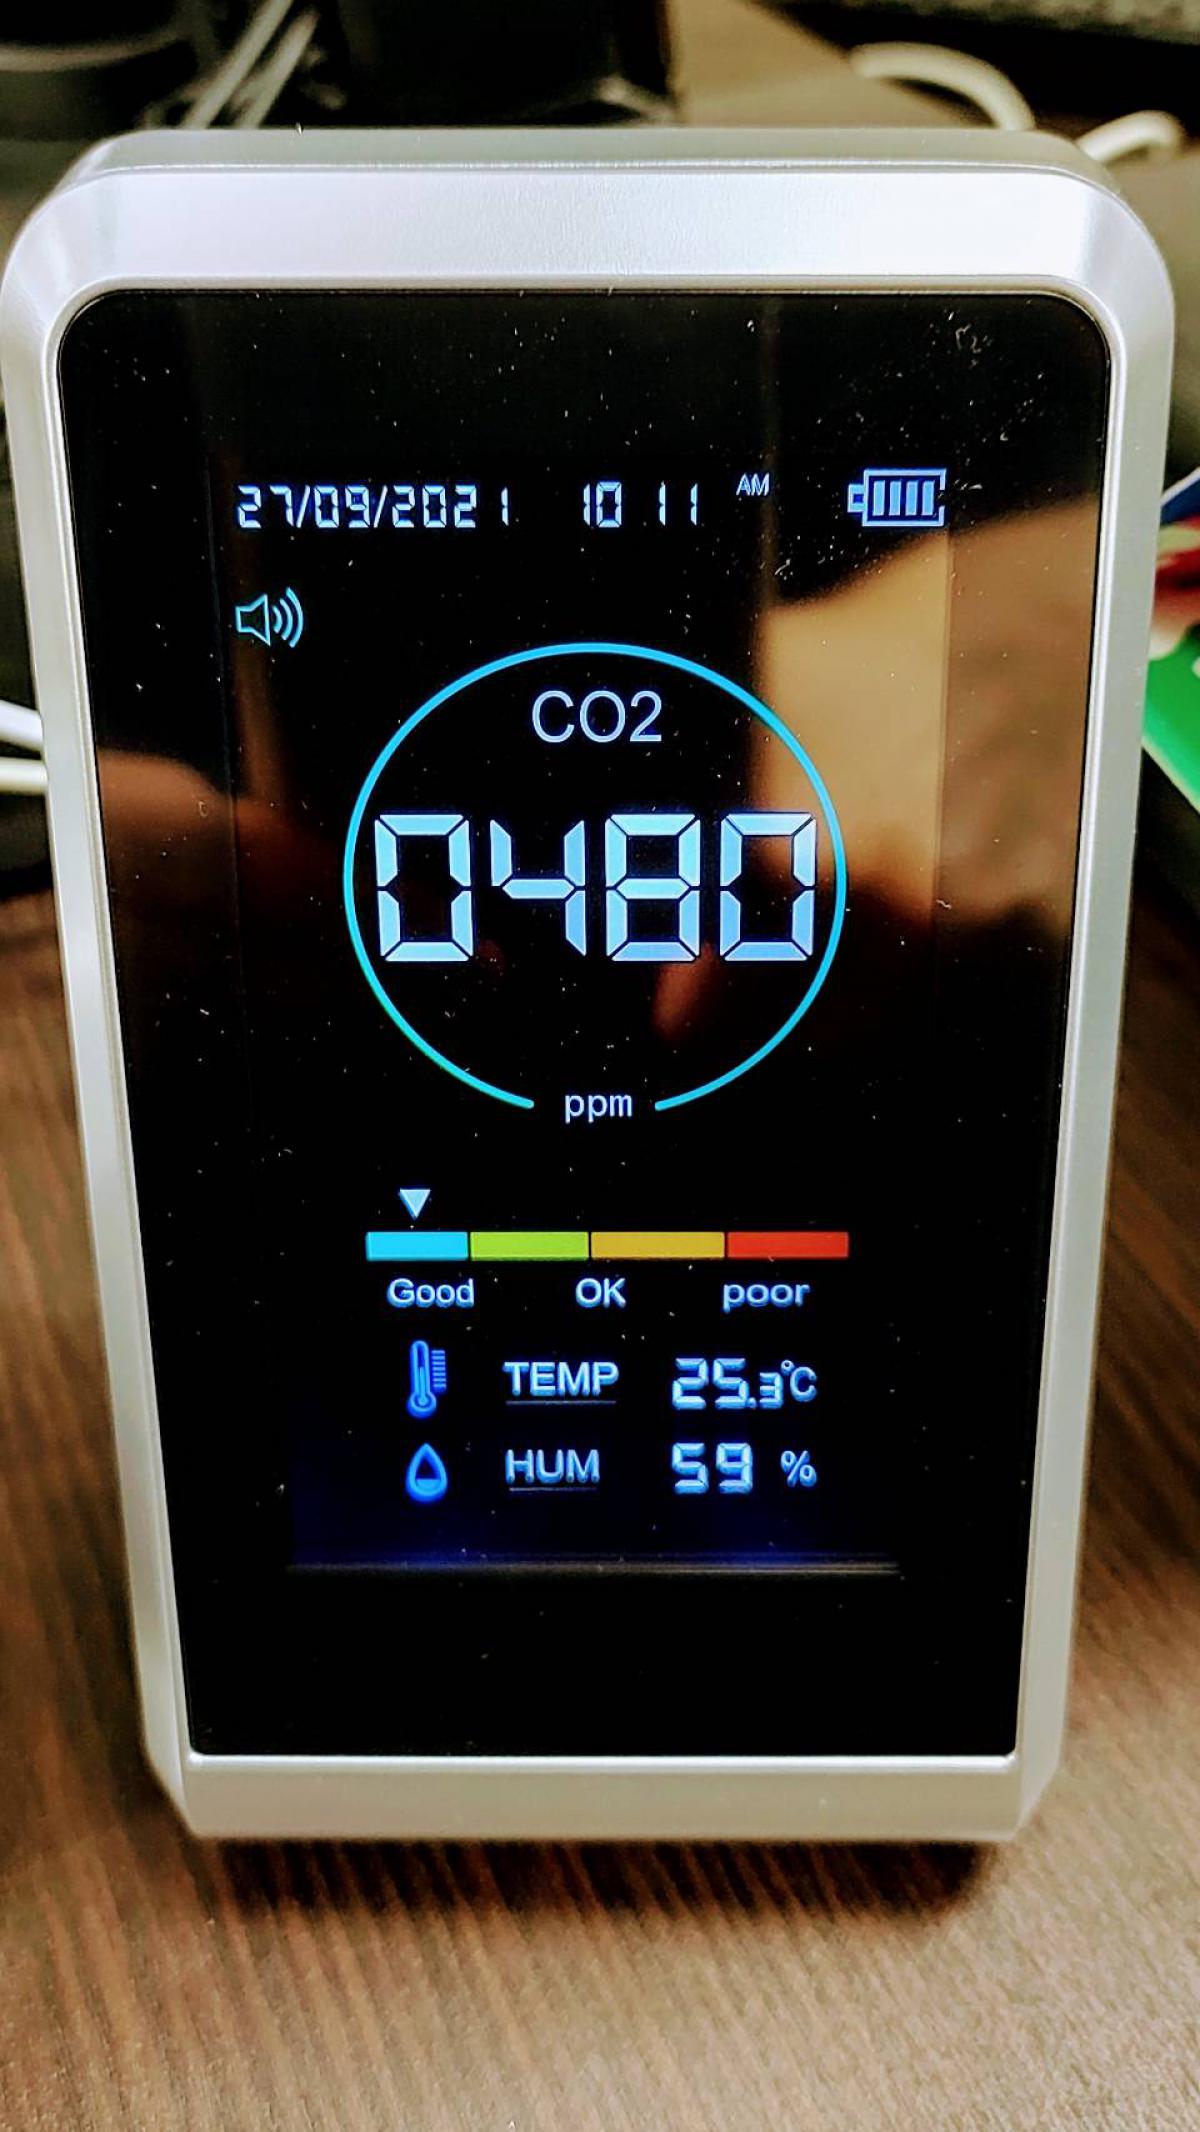 第6波の対策にCO2濃度測定器を置きました。